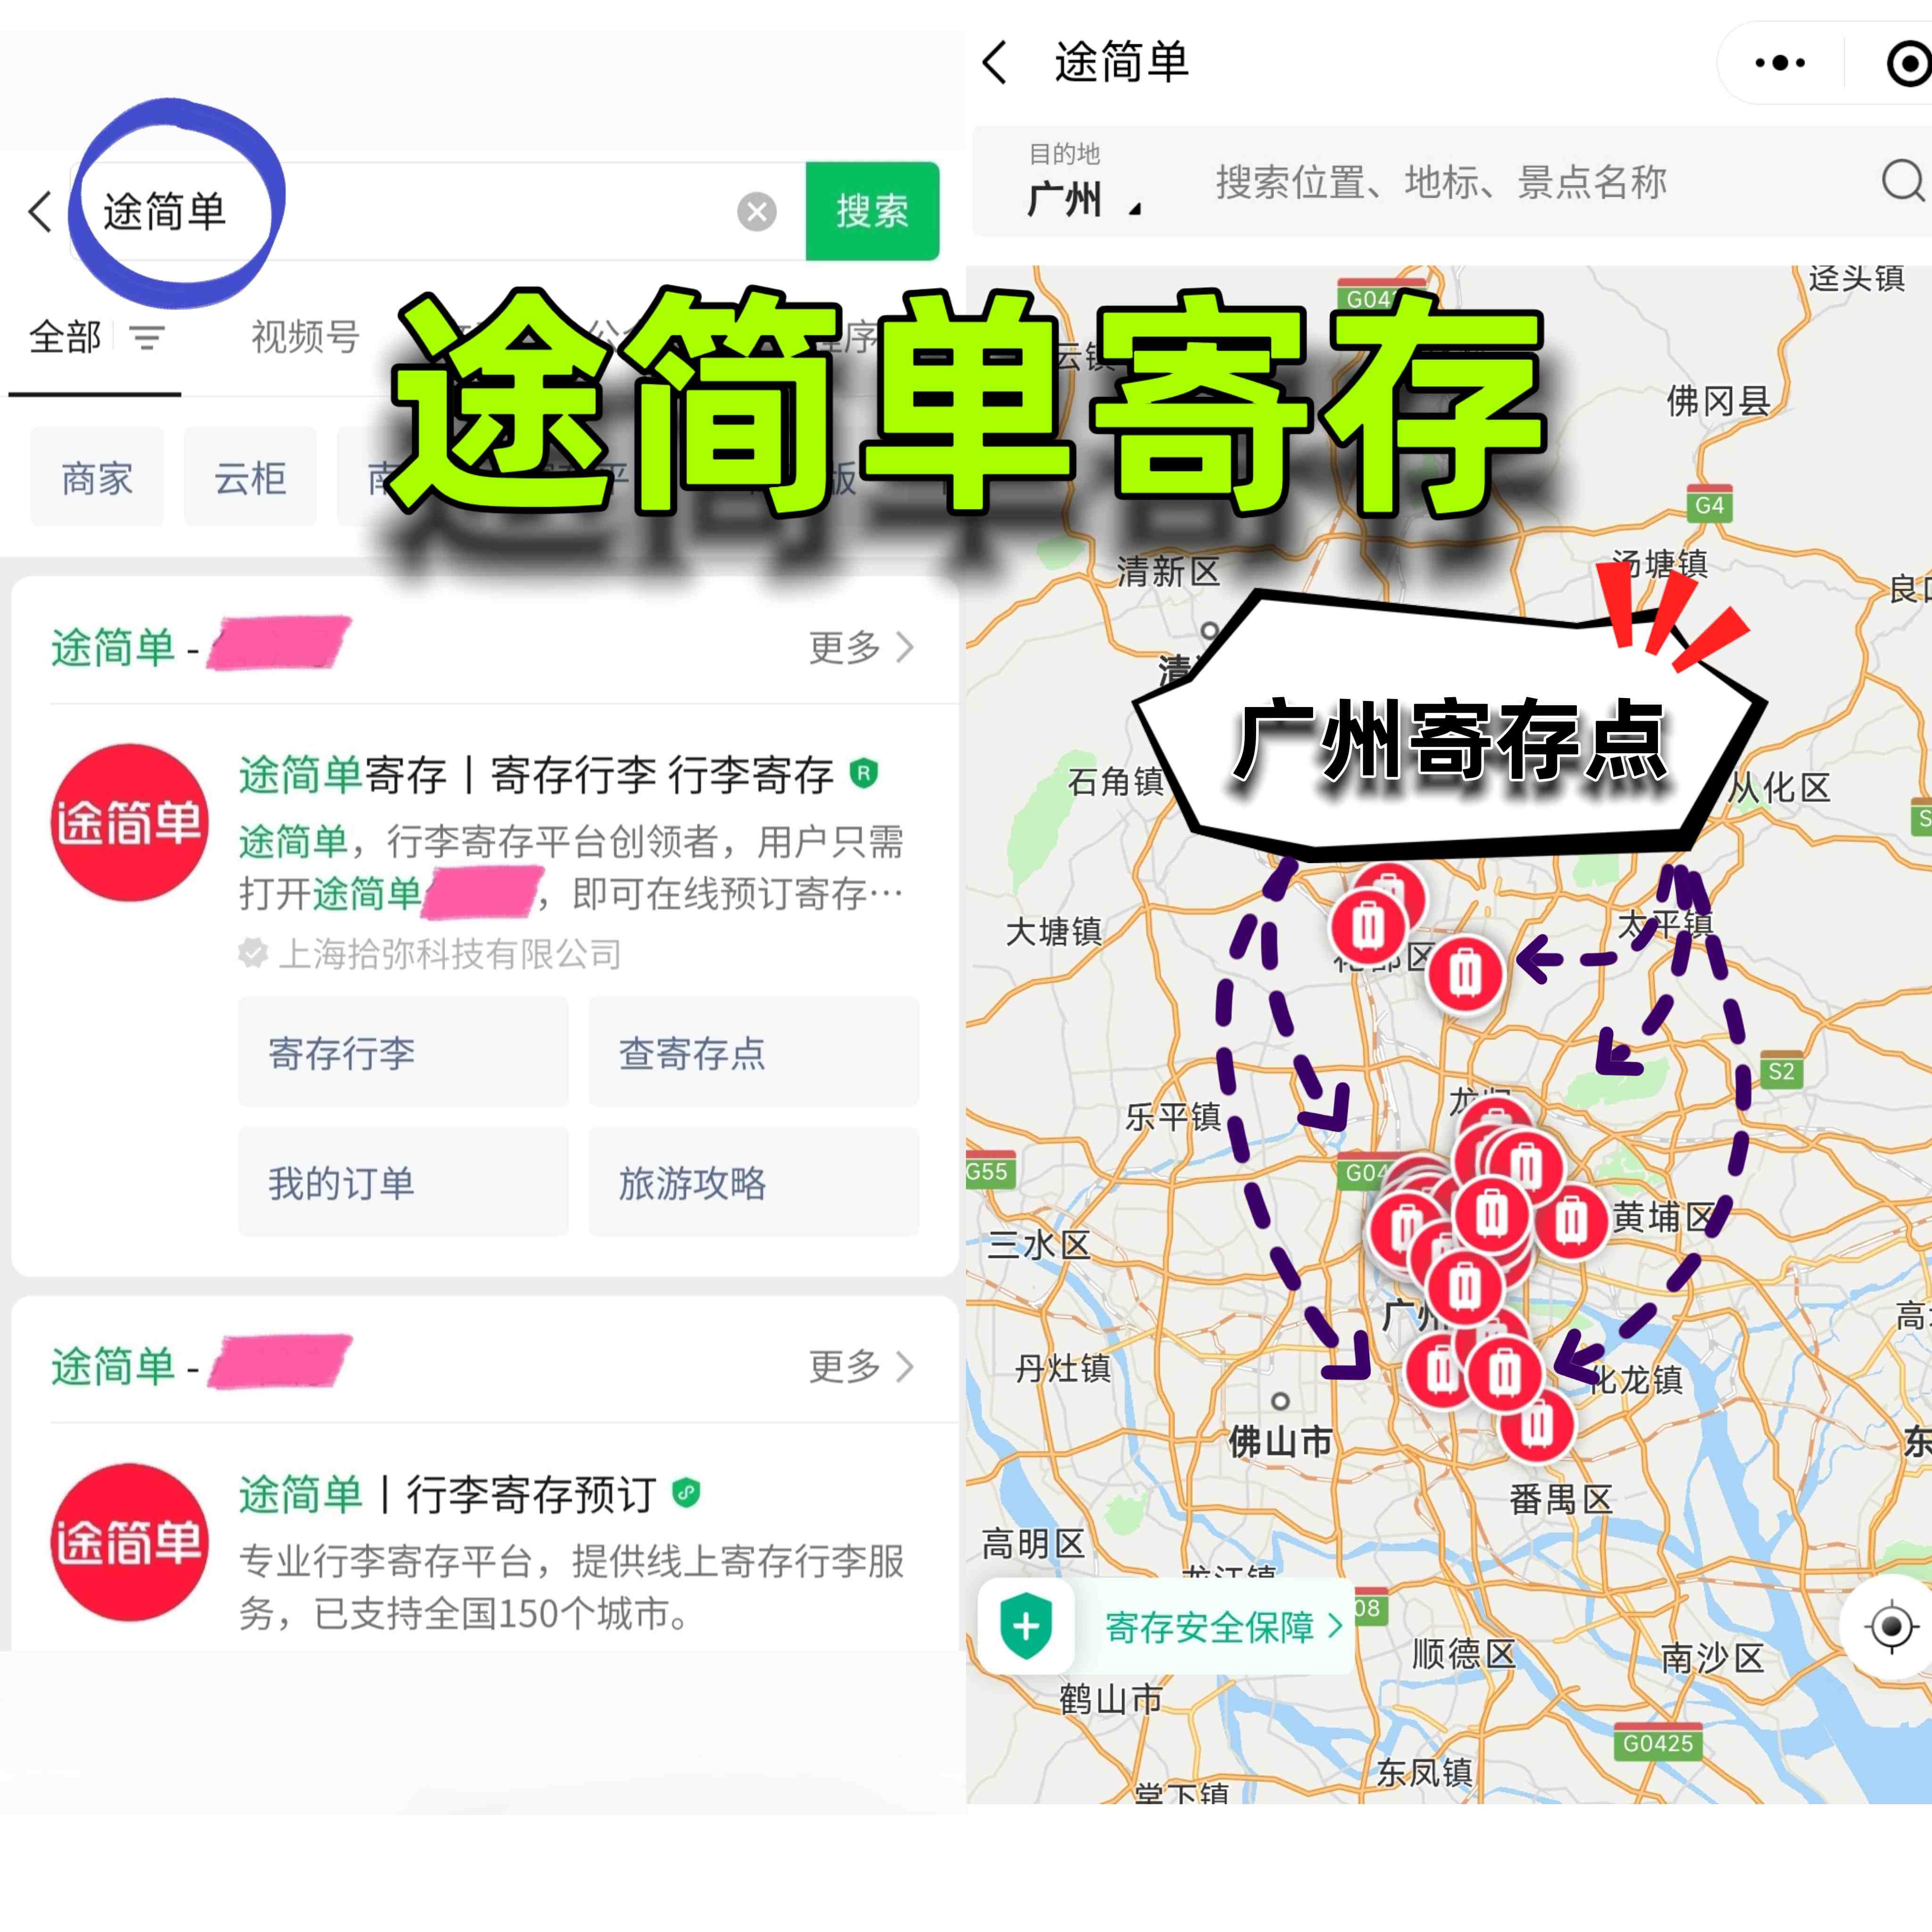 ️广州车陂地铁站有寄存行李的地方吗？收费多少？